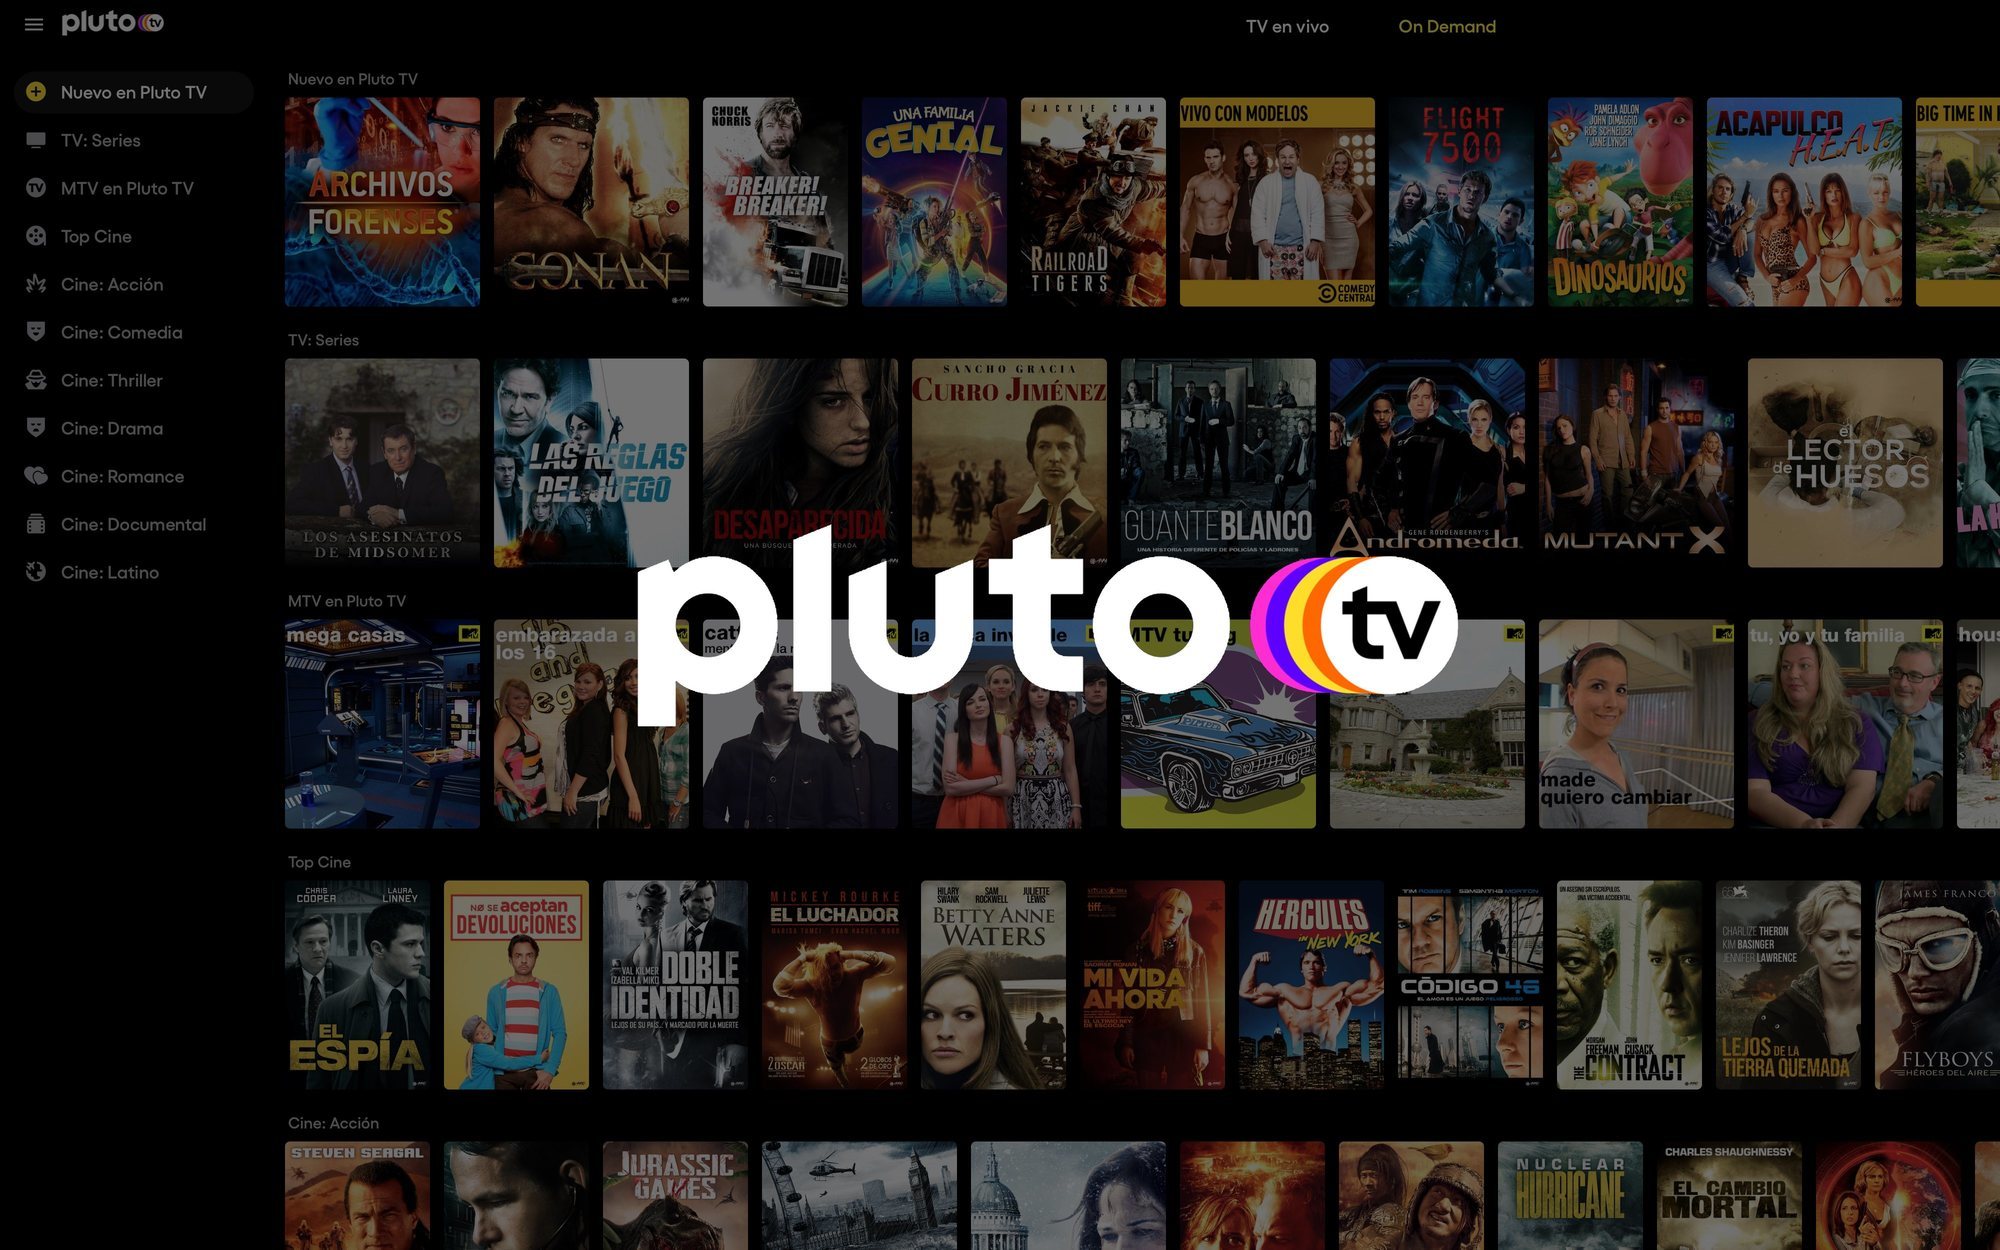 Pluto TV incorpora seis nuevos canales a su oferta en febrero